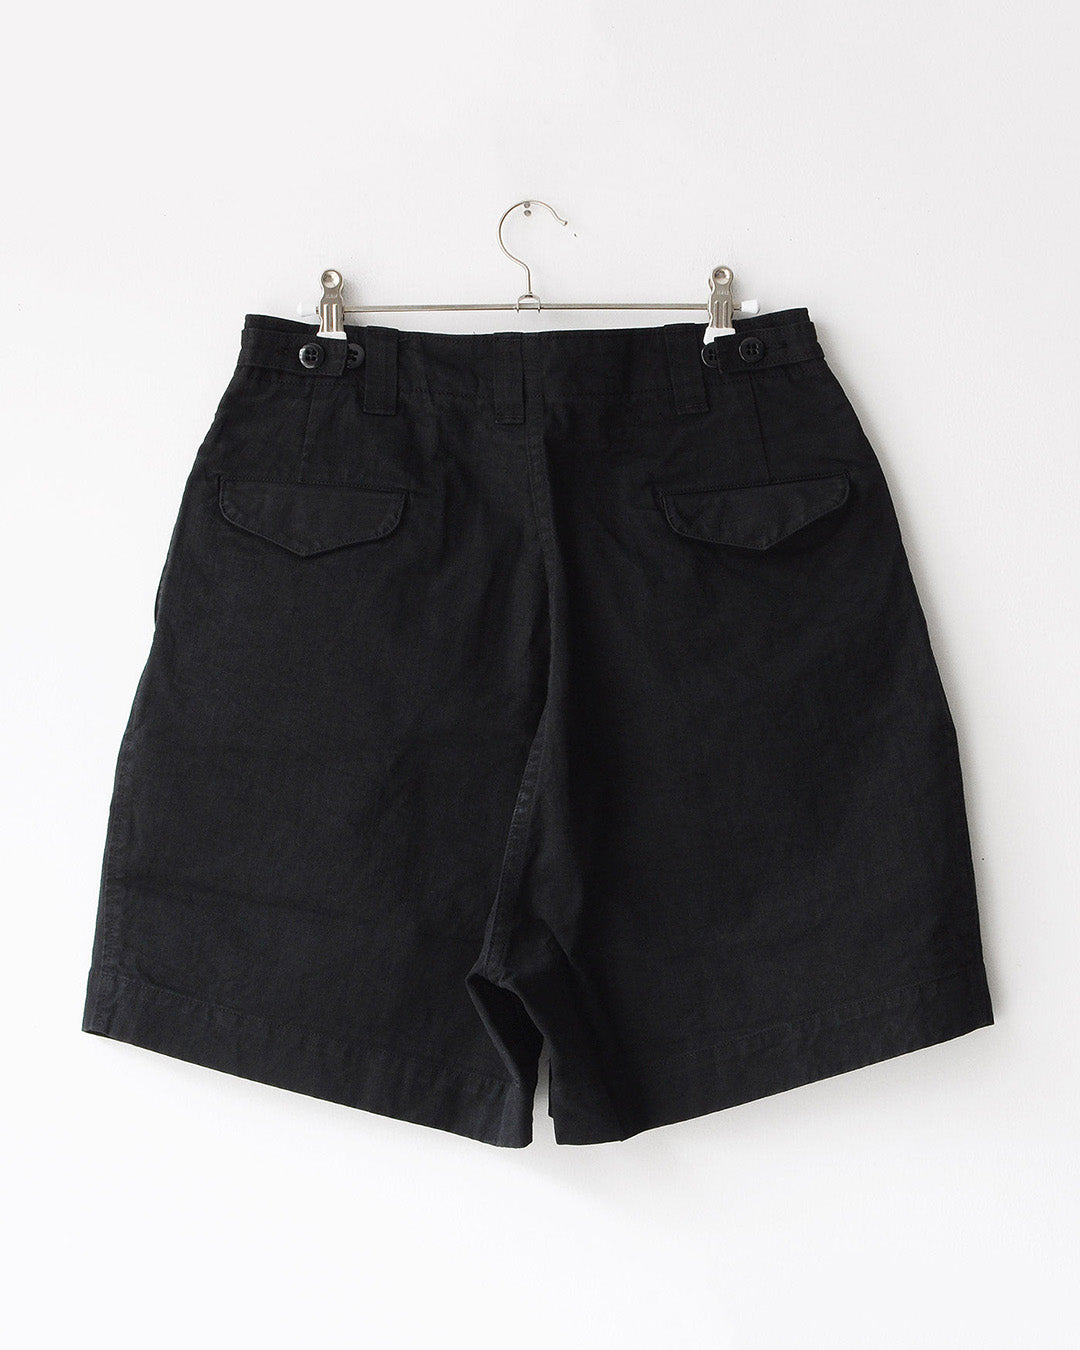 TUKI field shorts / black / solid twill G/D